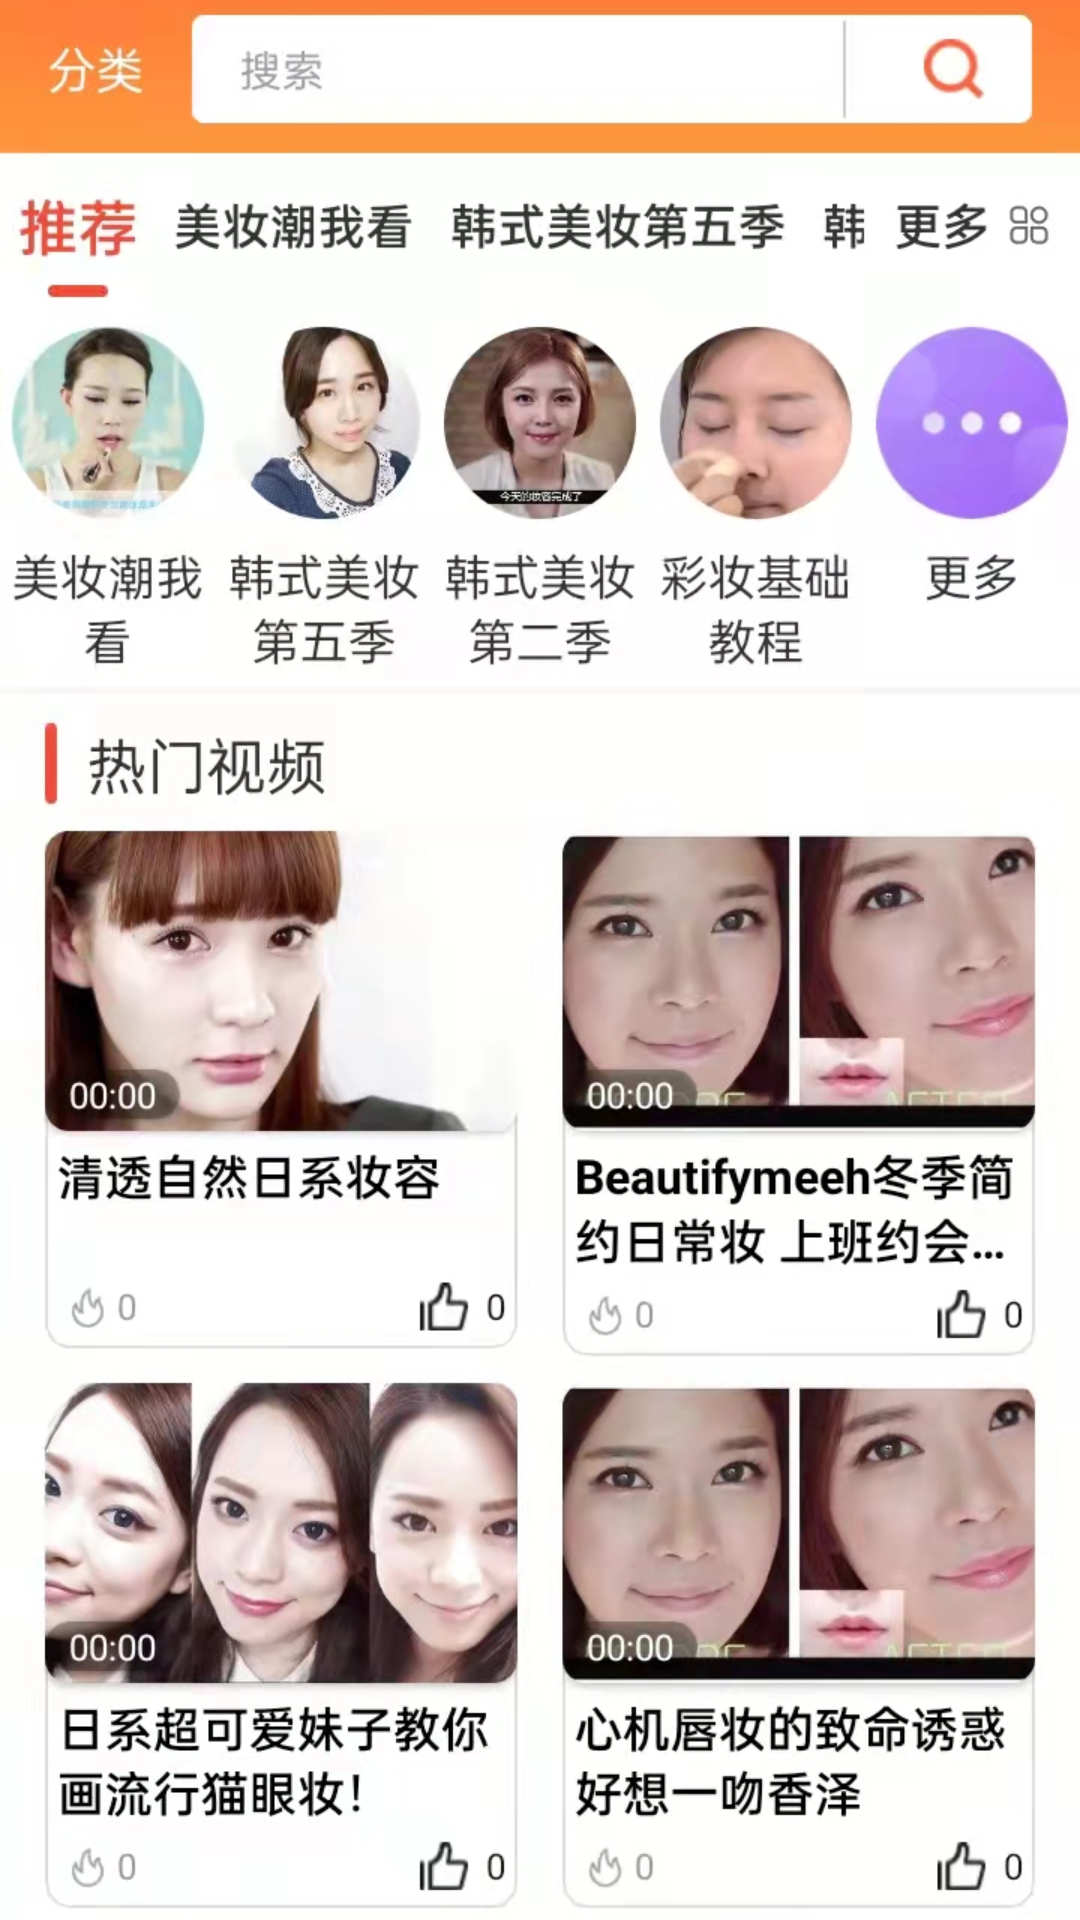 美妆达人秀app下载,美妆达人秀app官方版 v2.1.8